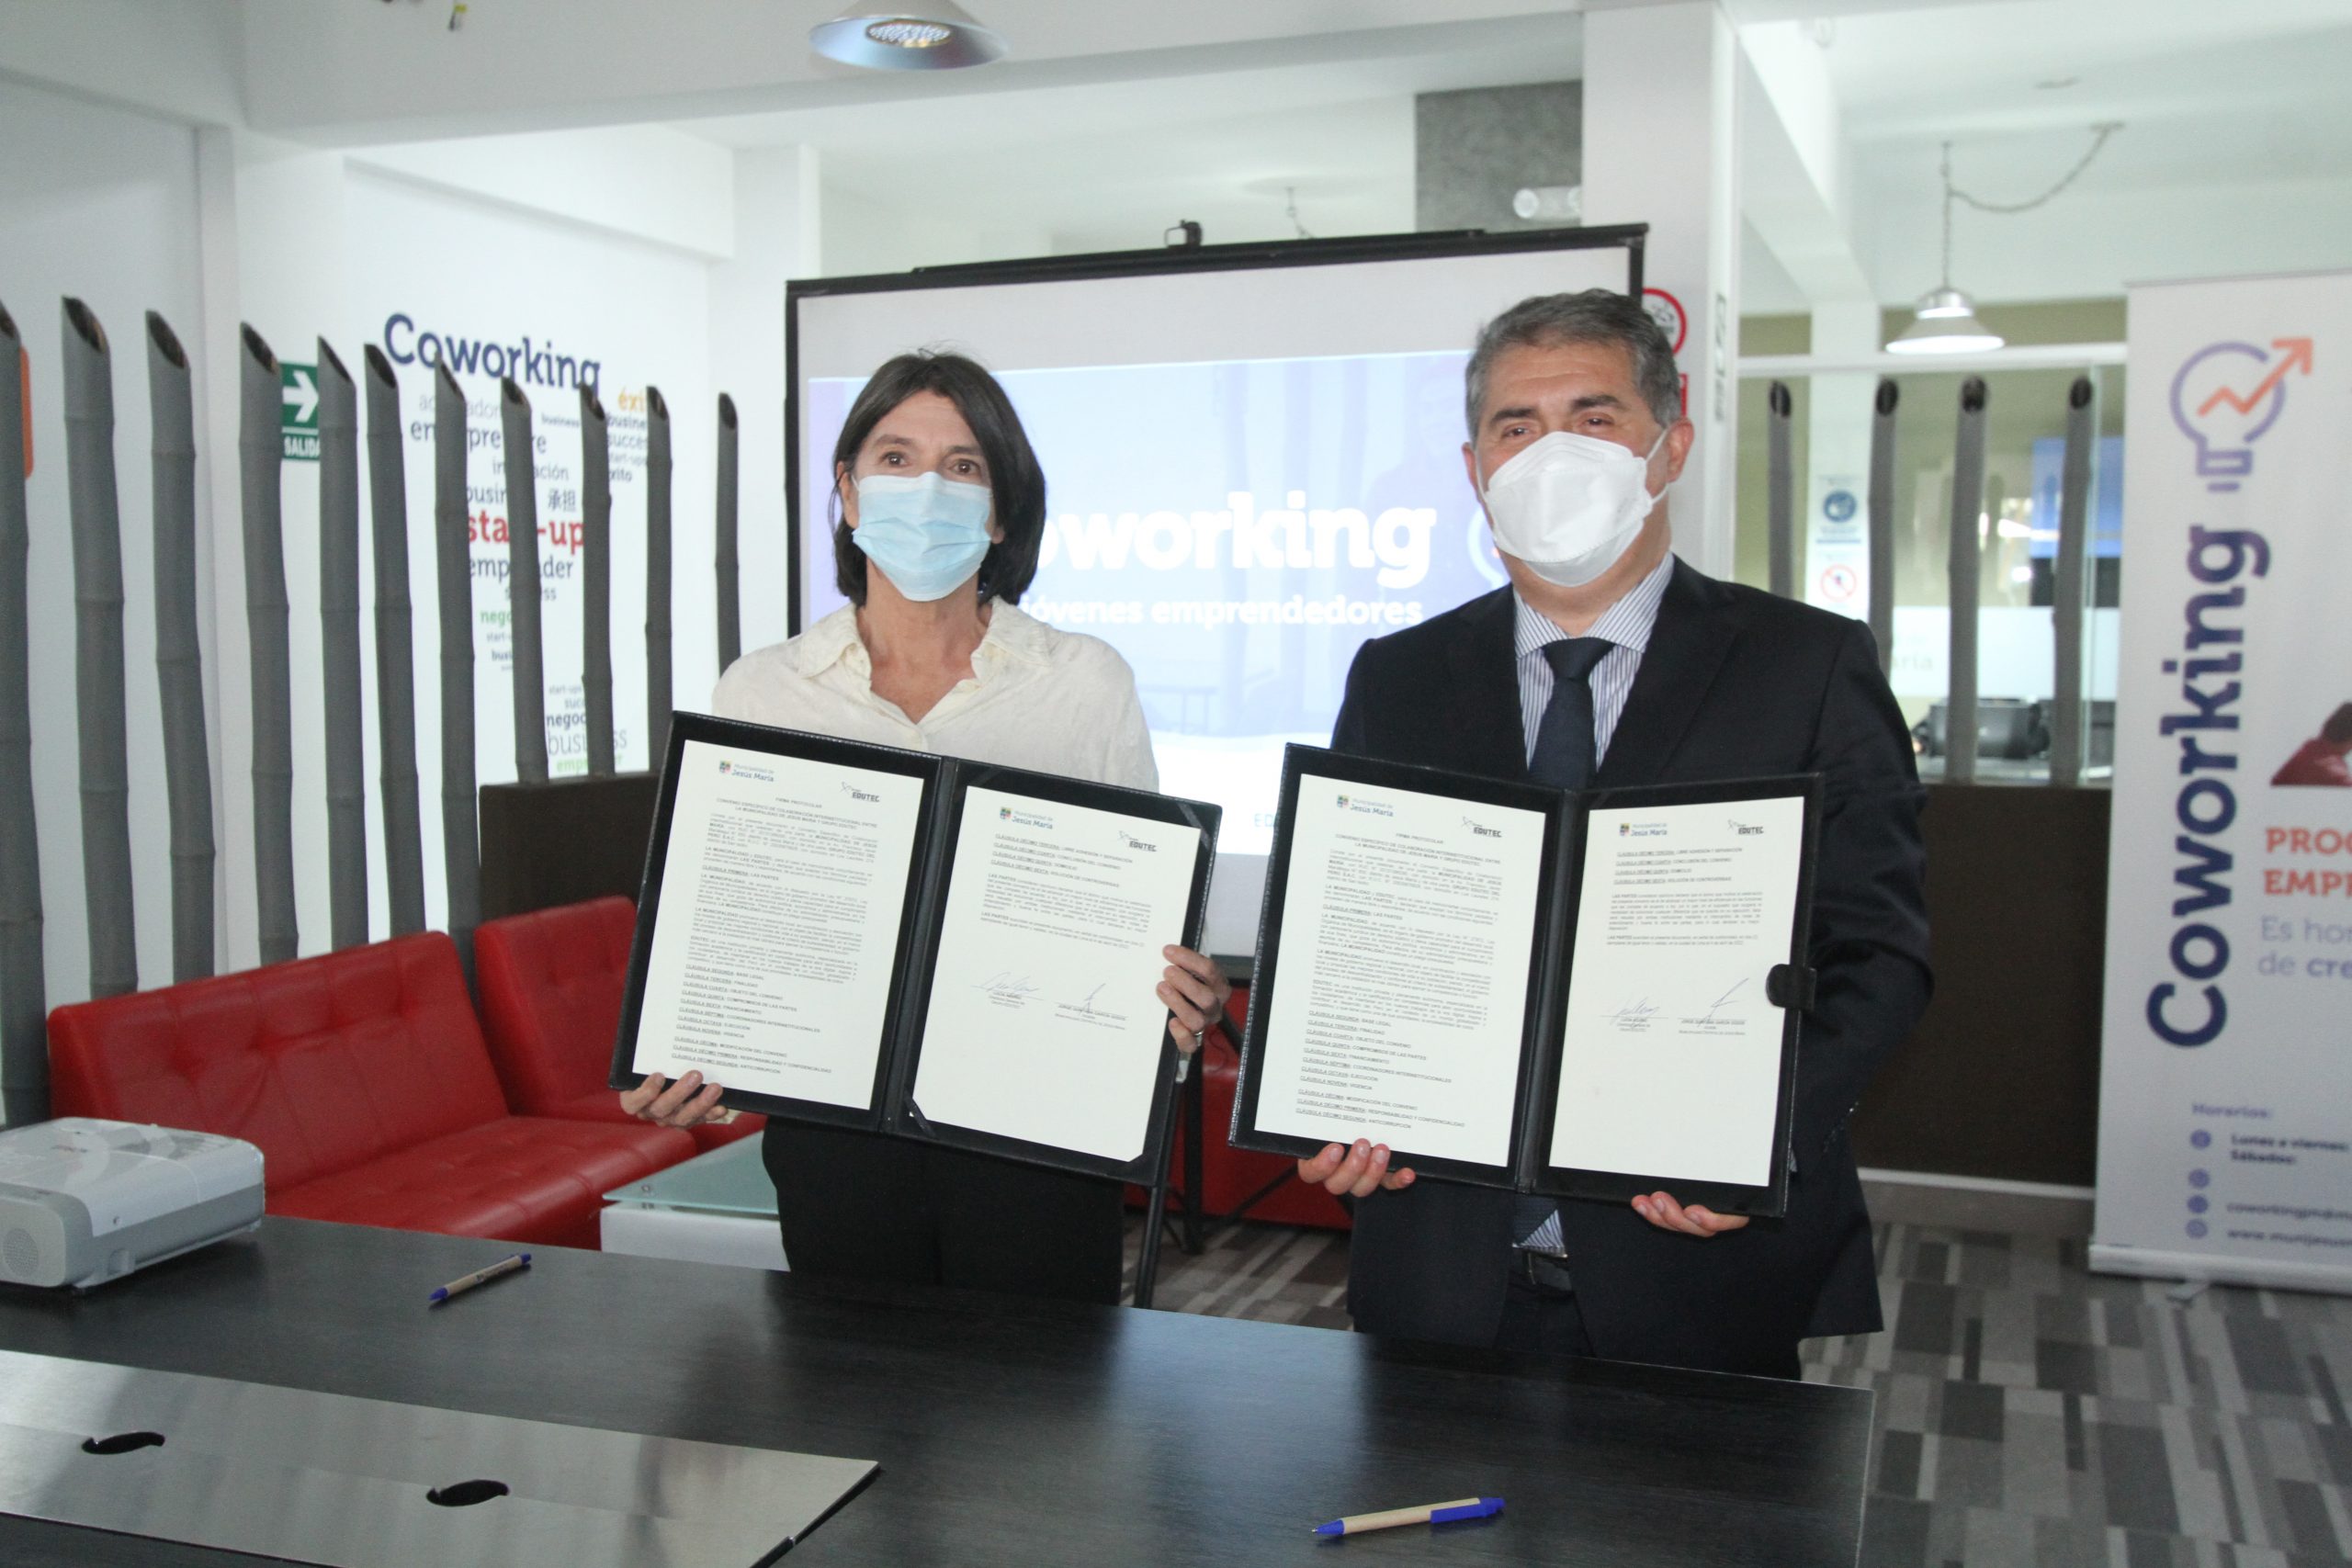 Alcalde Jesús María y Representante de Edutec mostrando convenio firmado